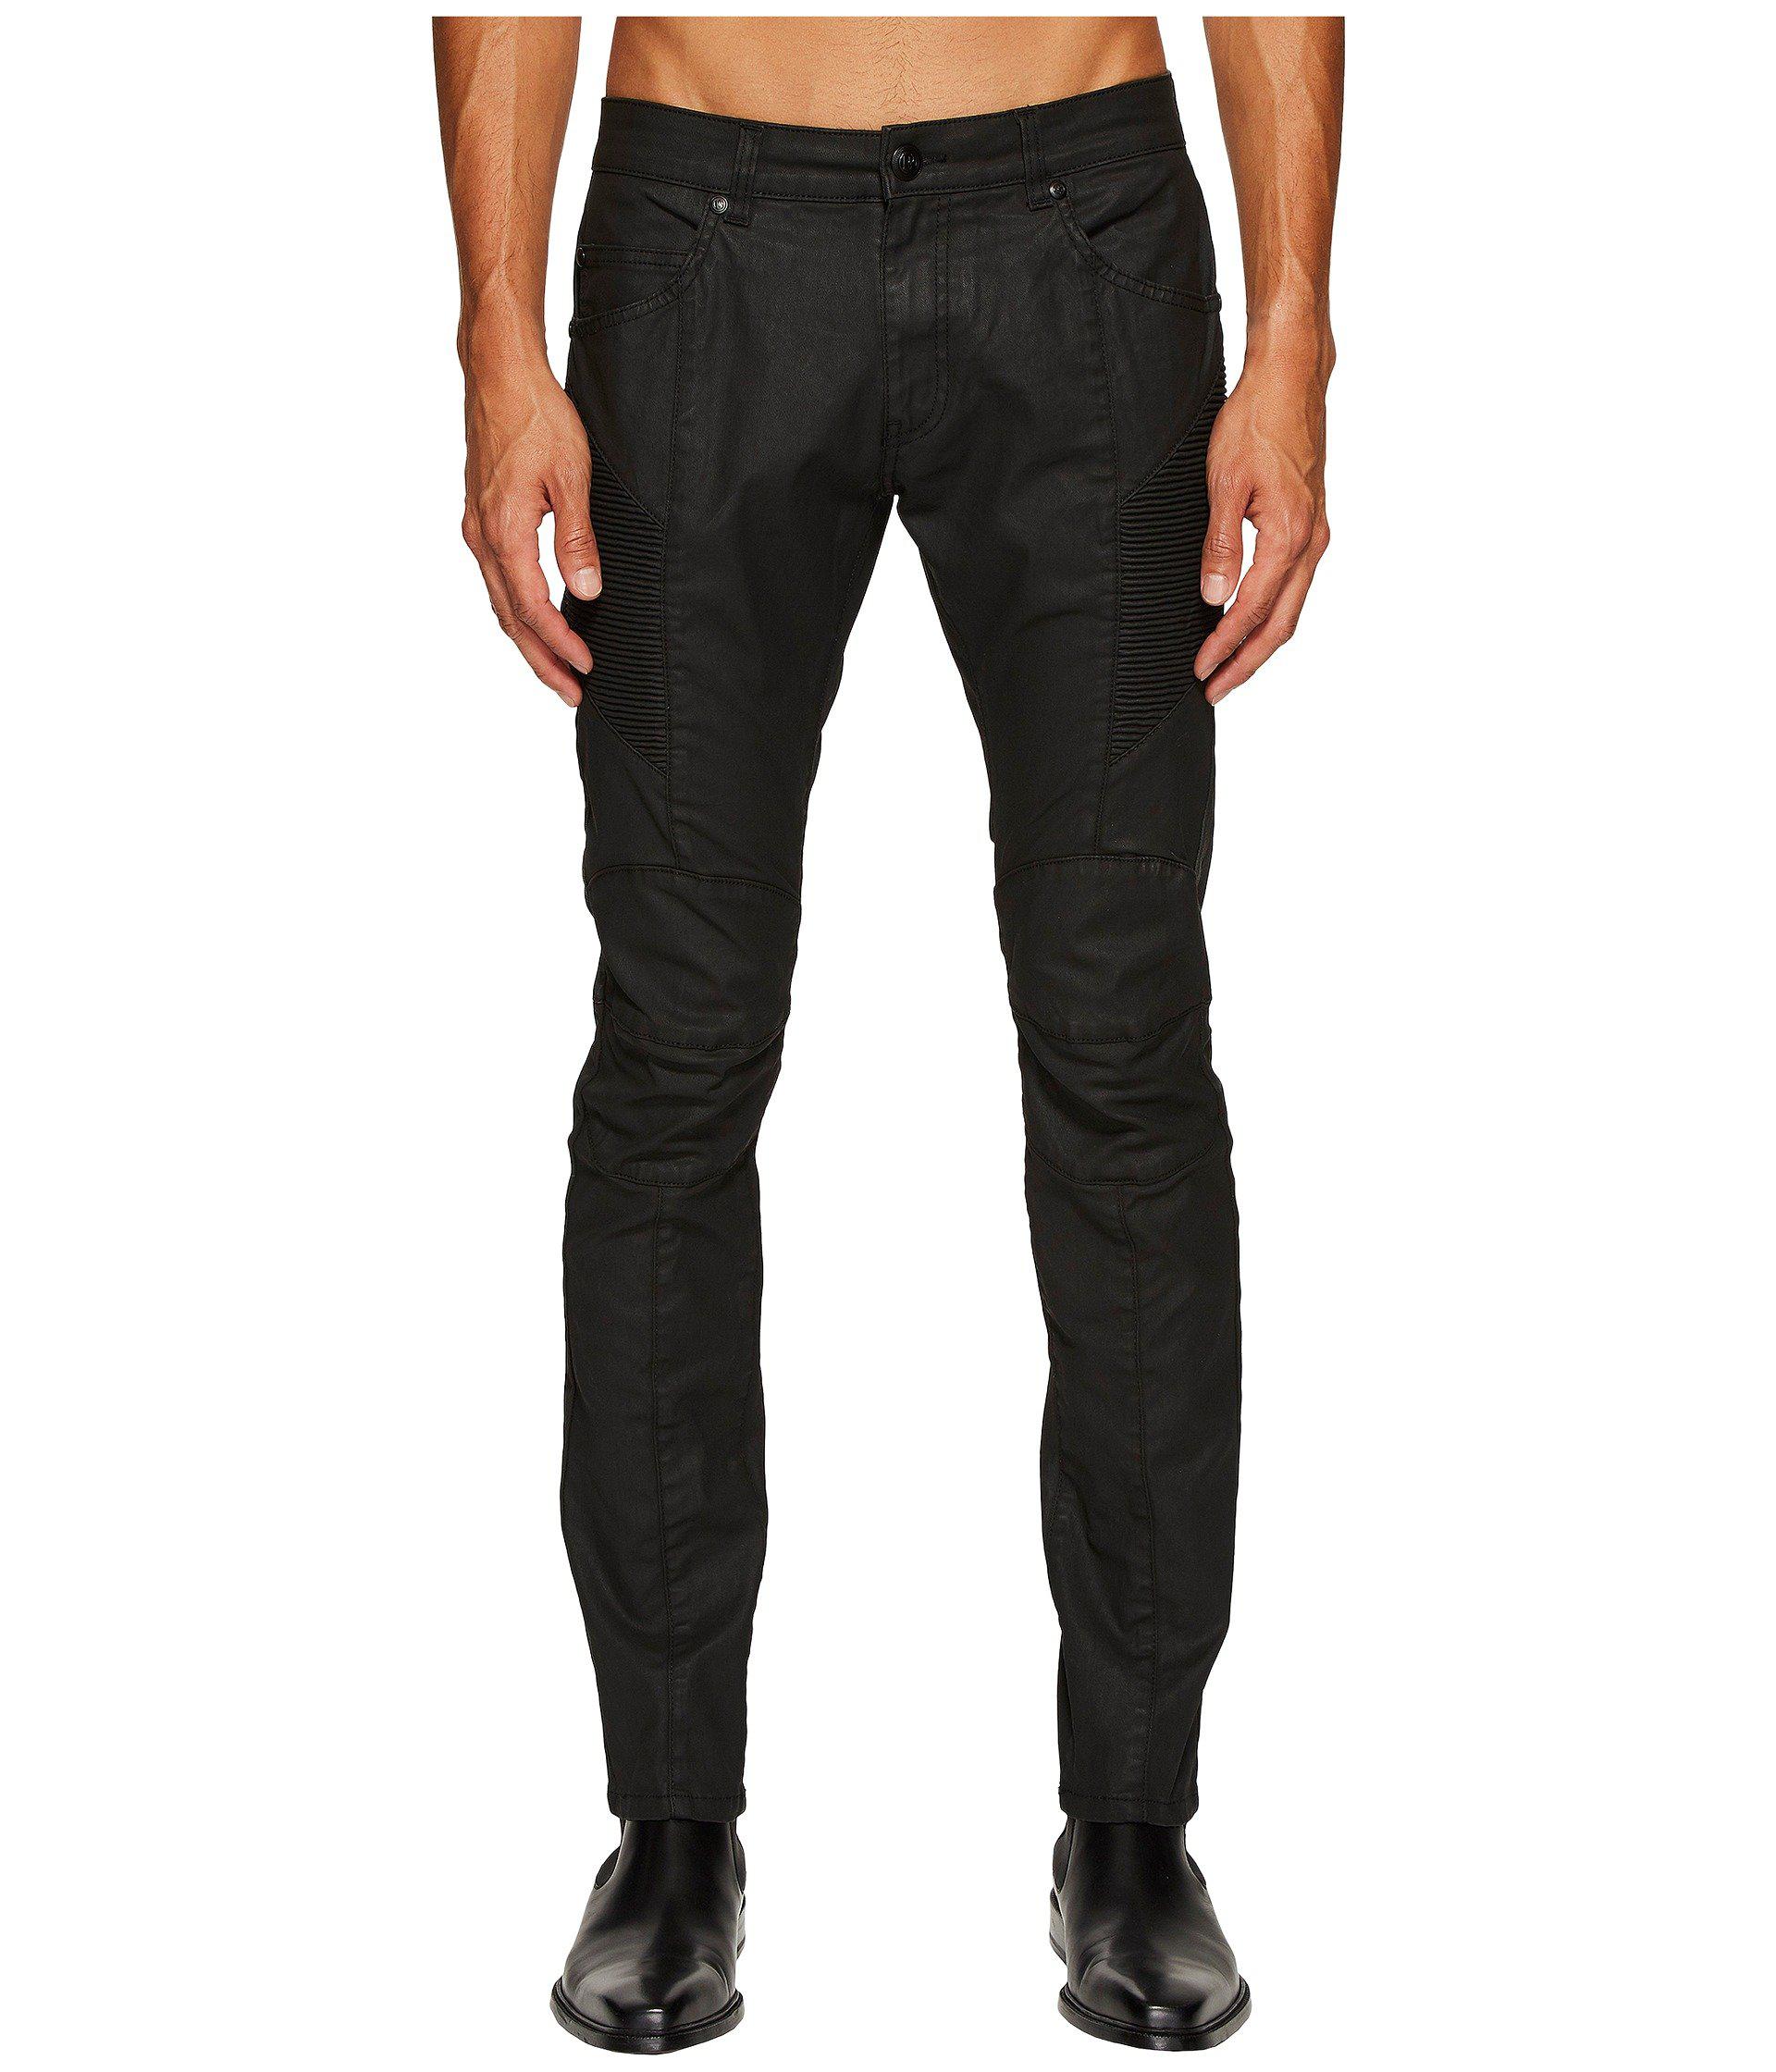 Balmain Denim Waxed Biker Jeans in Black for Men - Lyst